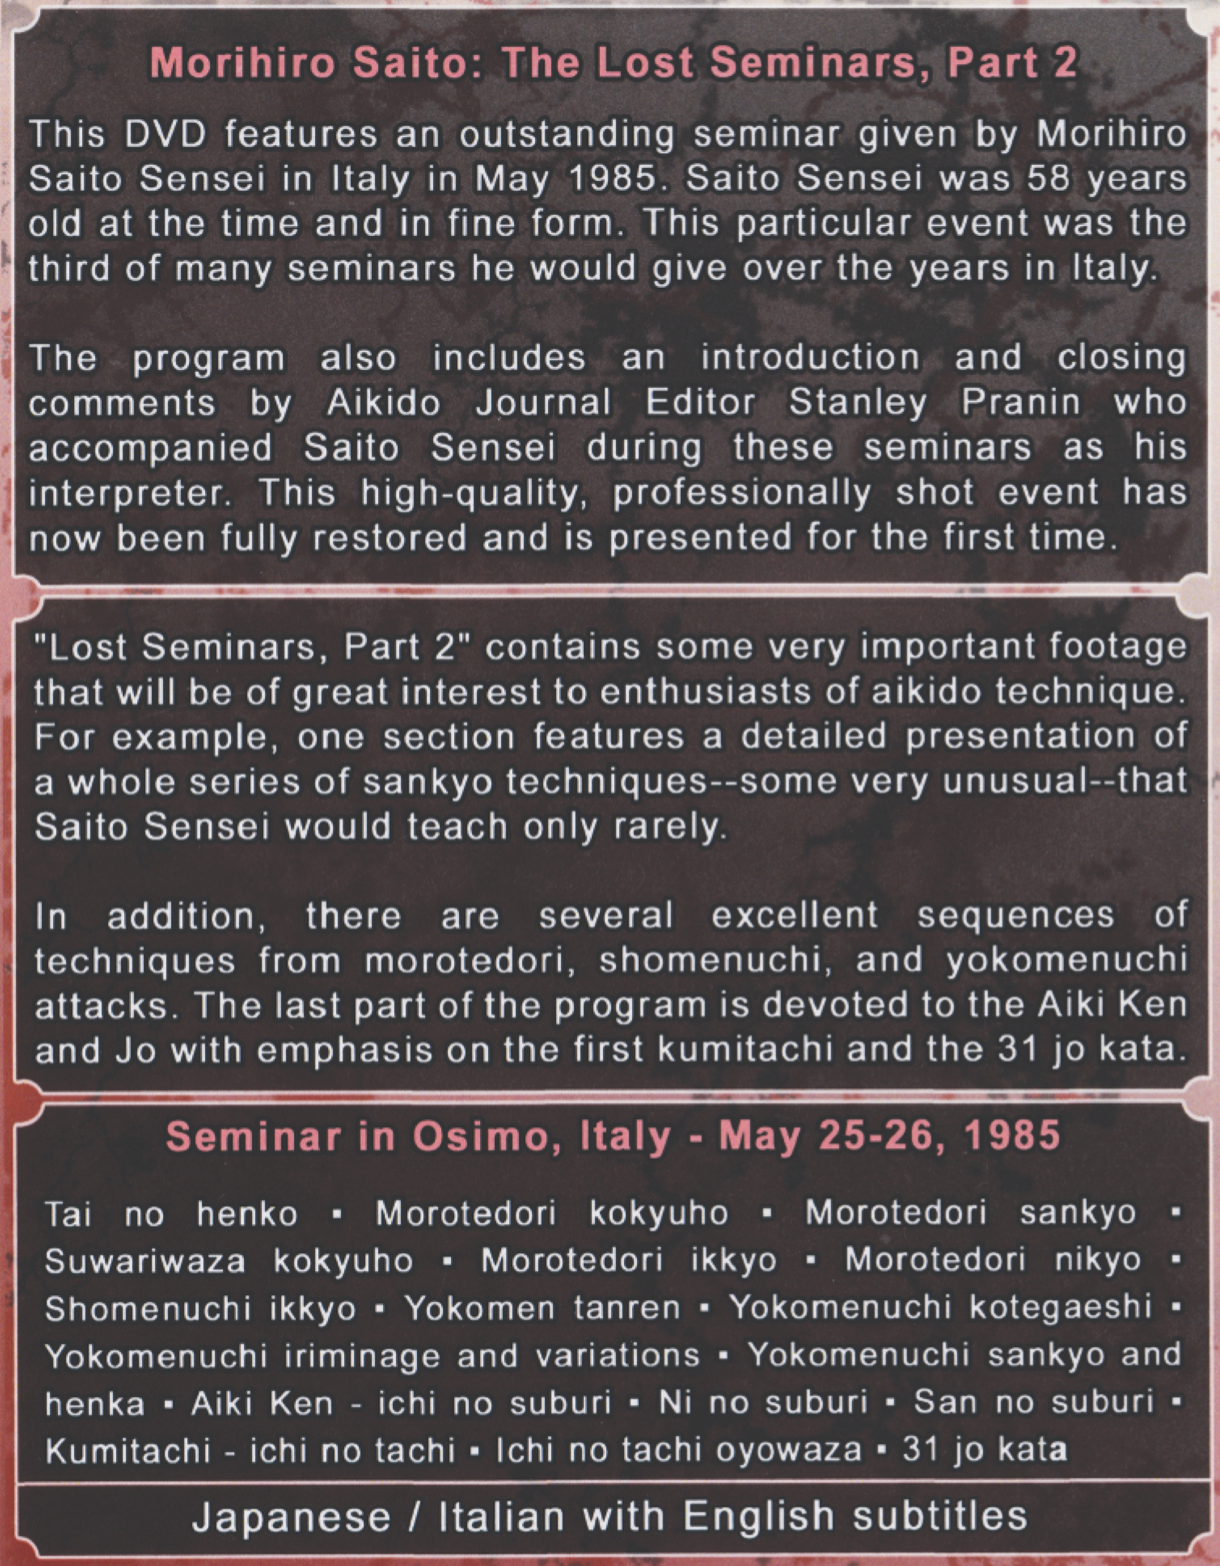 Lost Seminars 2: Italy 1985 by Morihiro Saito (On Demand)